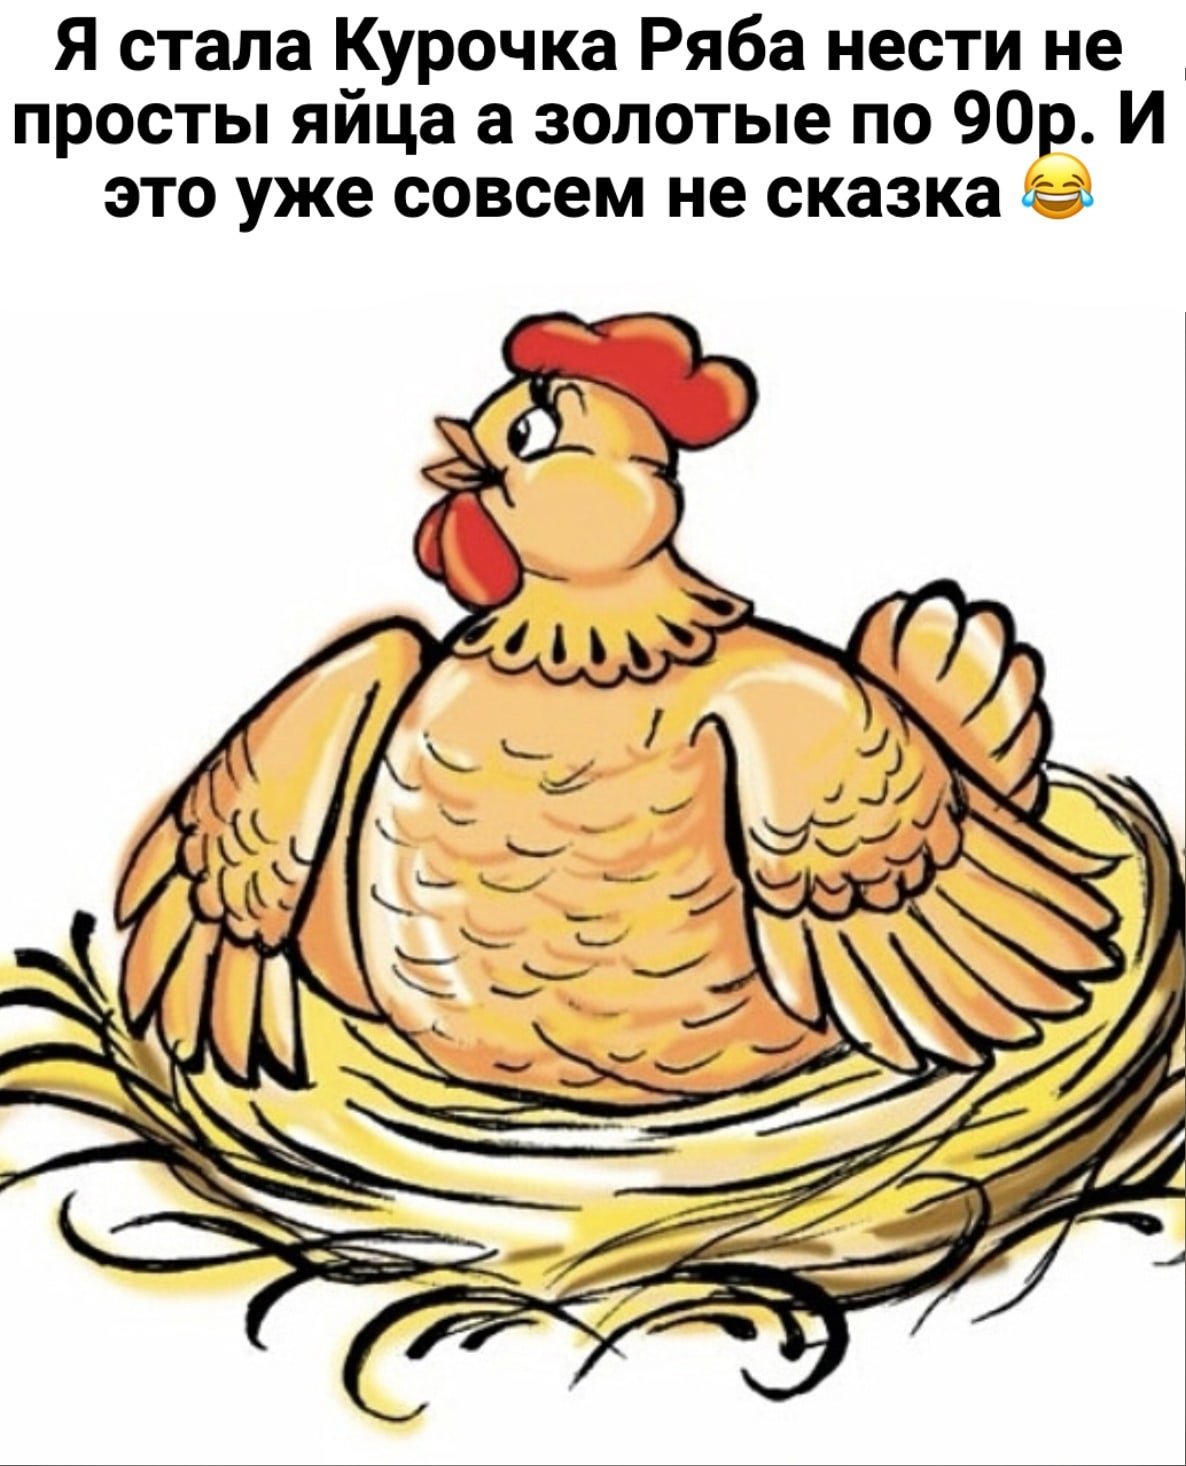 Курица из сказки Курочка Ряба